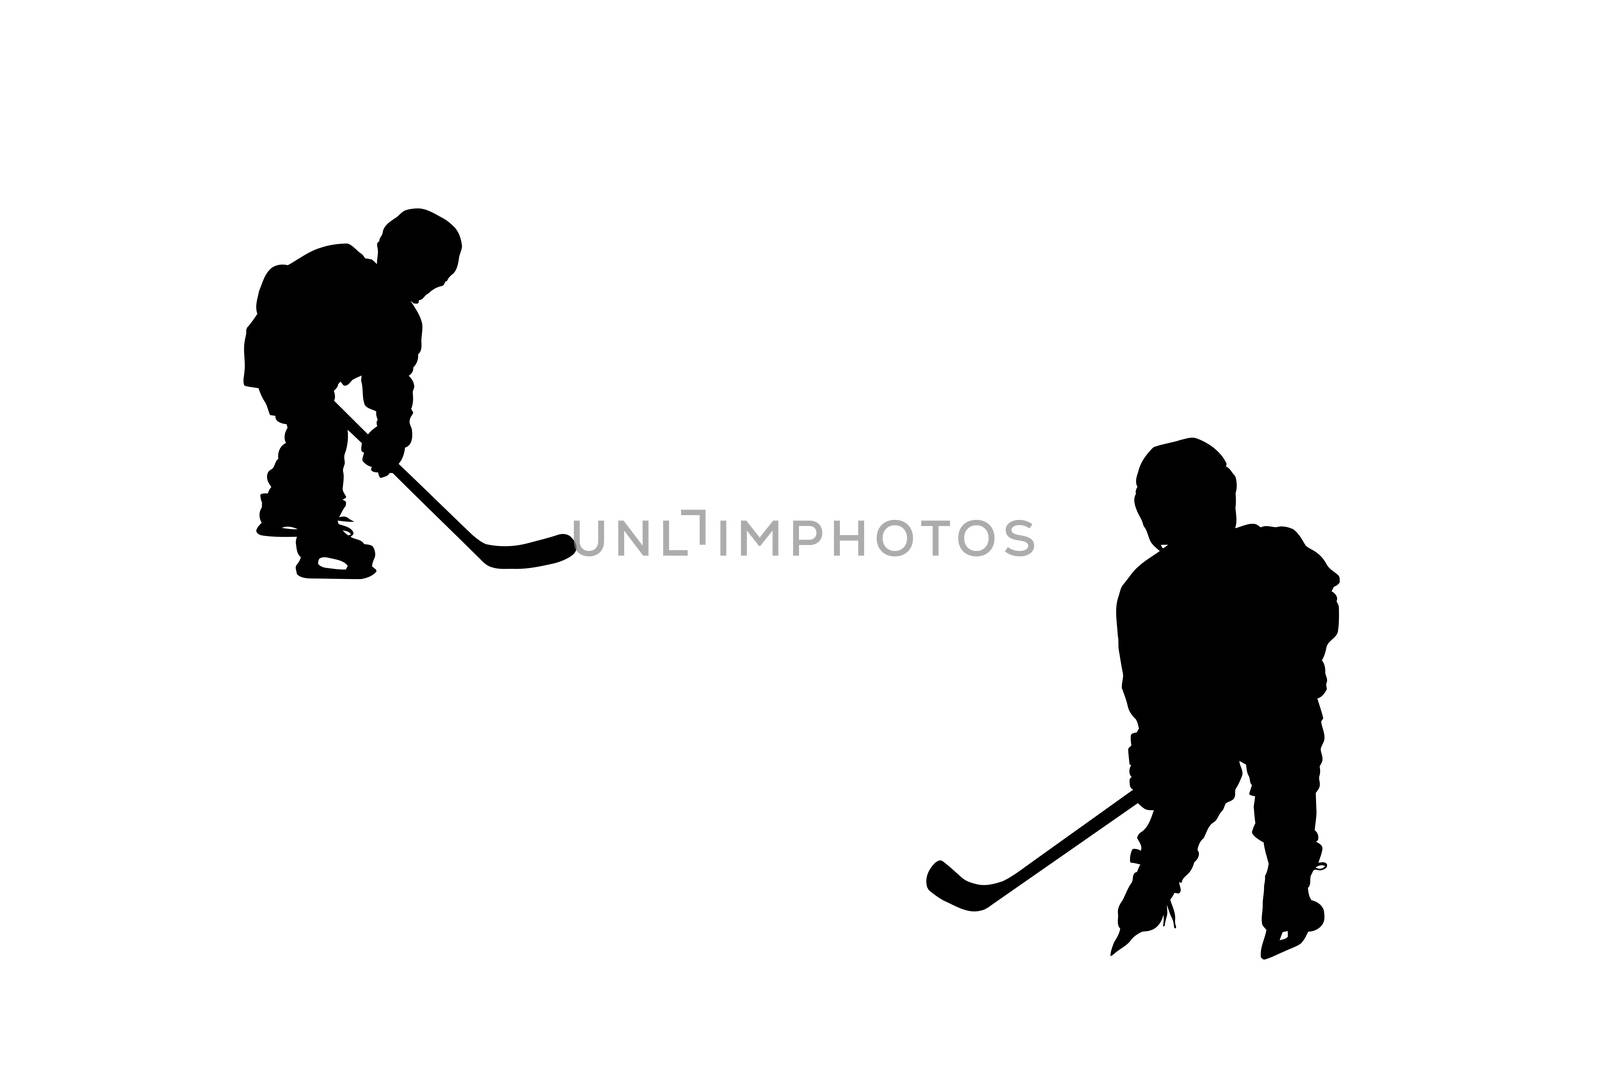 hockey players silhouettes by zhannaprokopeva